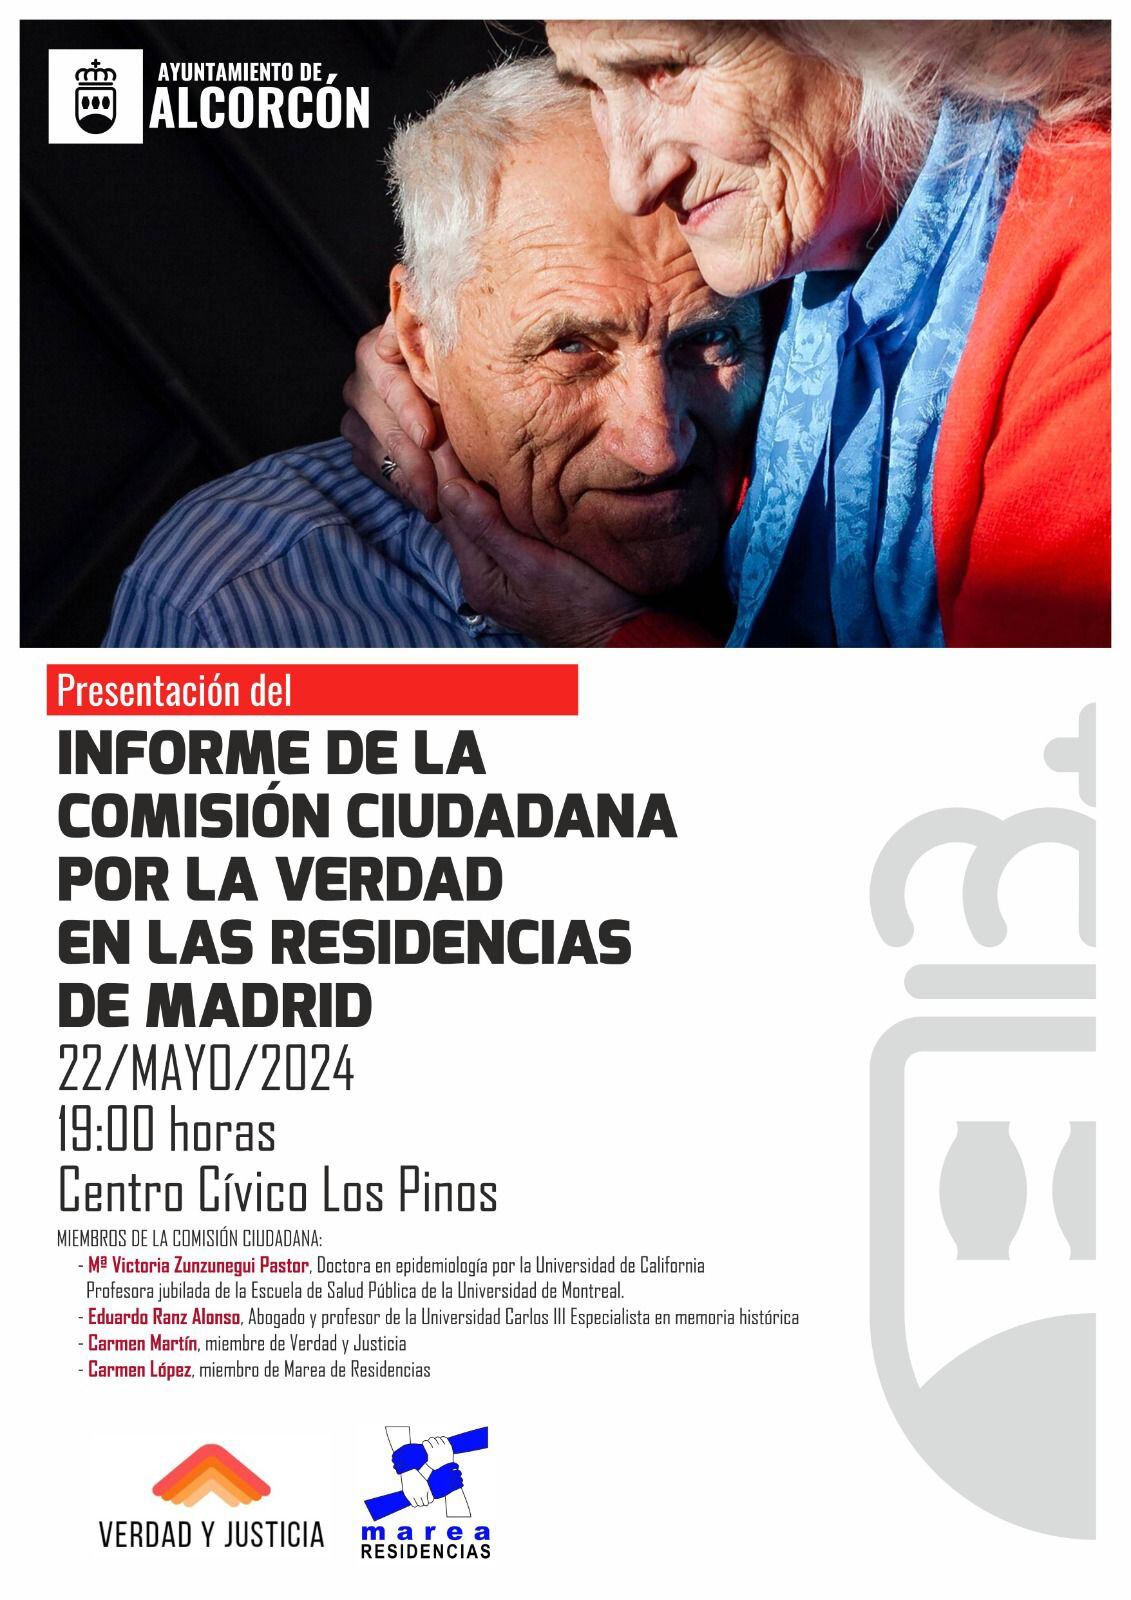 Cartel del evento cancelado en Alcorcón sobre los sucesos en residencia de 2020.